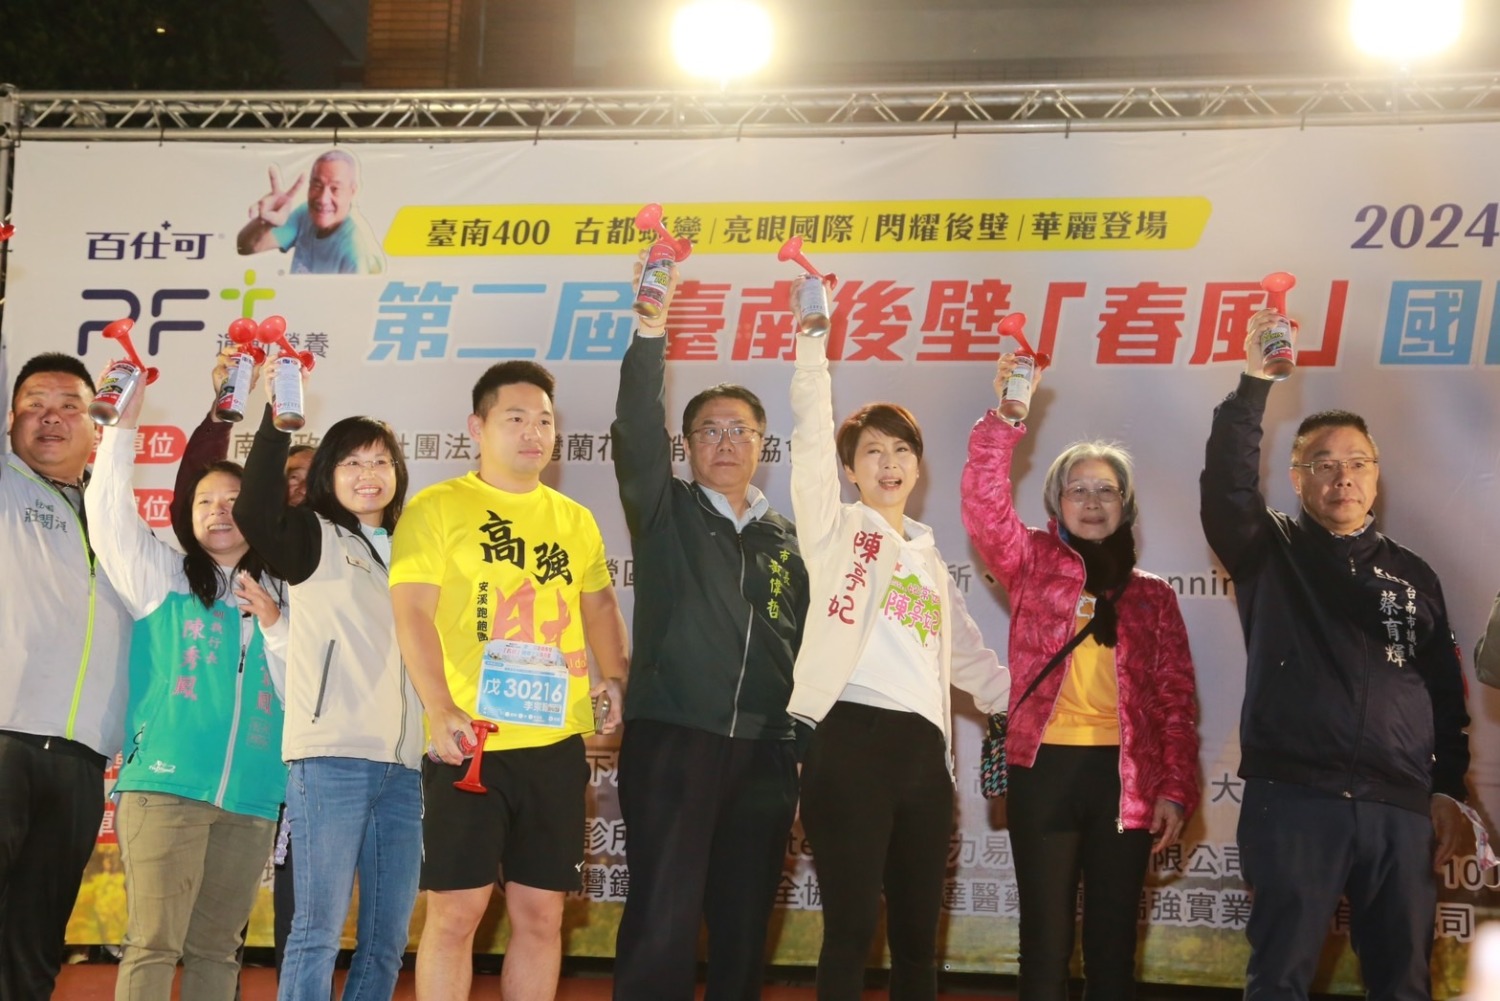 第二屆臺南後壁「春風」國際公益馬拉松登場  黃偉哲邀民眾享受賽事並把握機會參觀蘭展及燈會